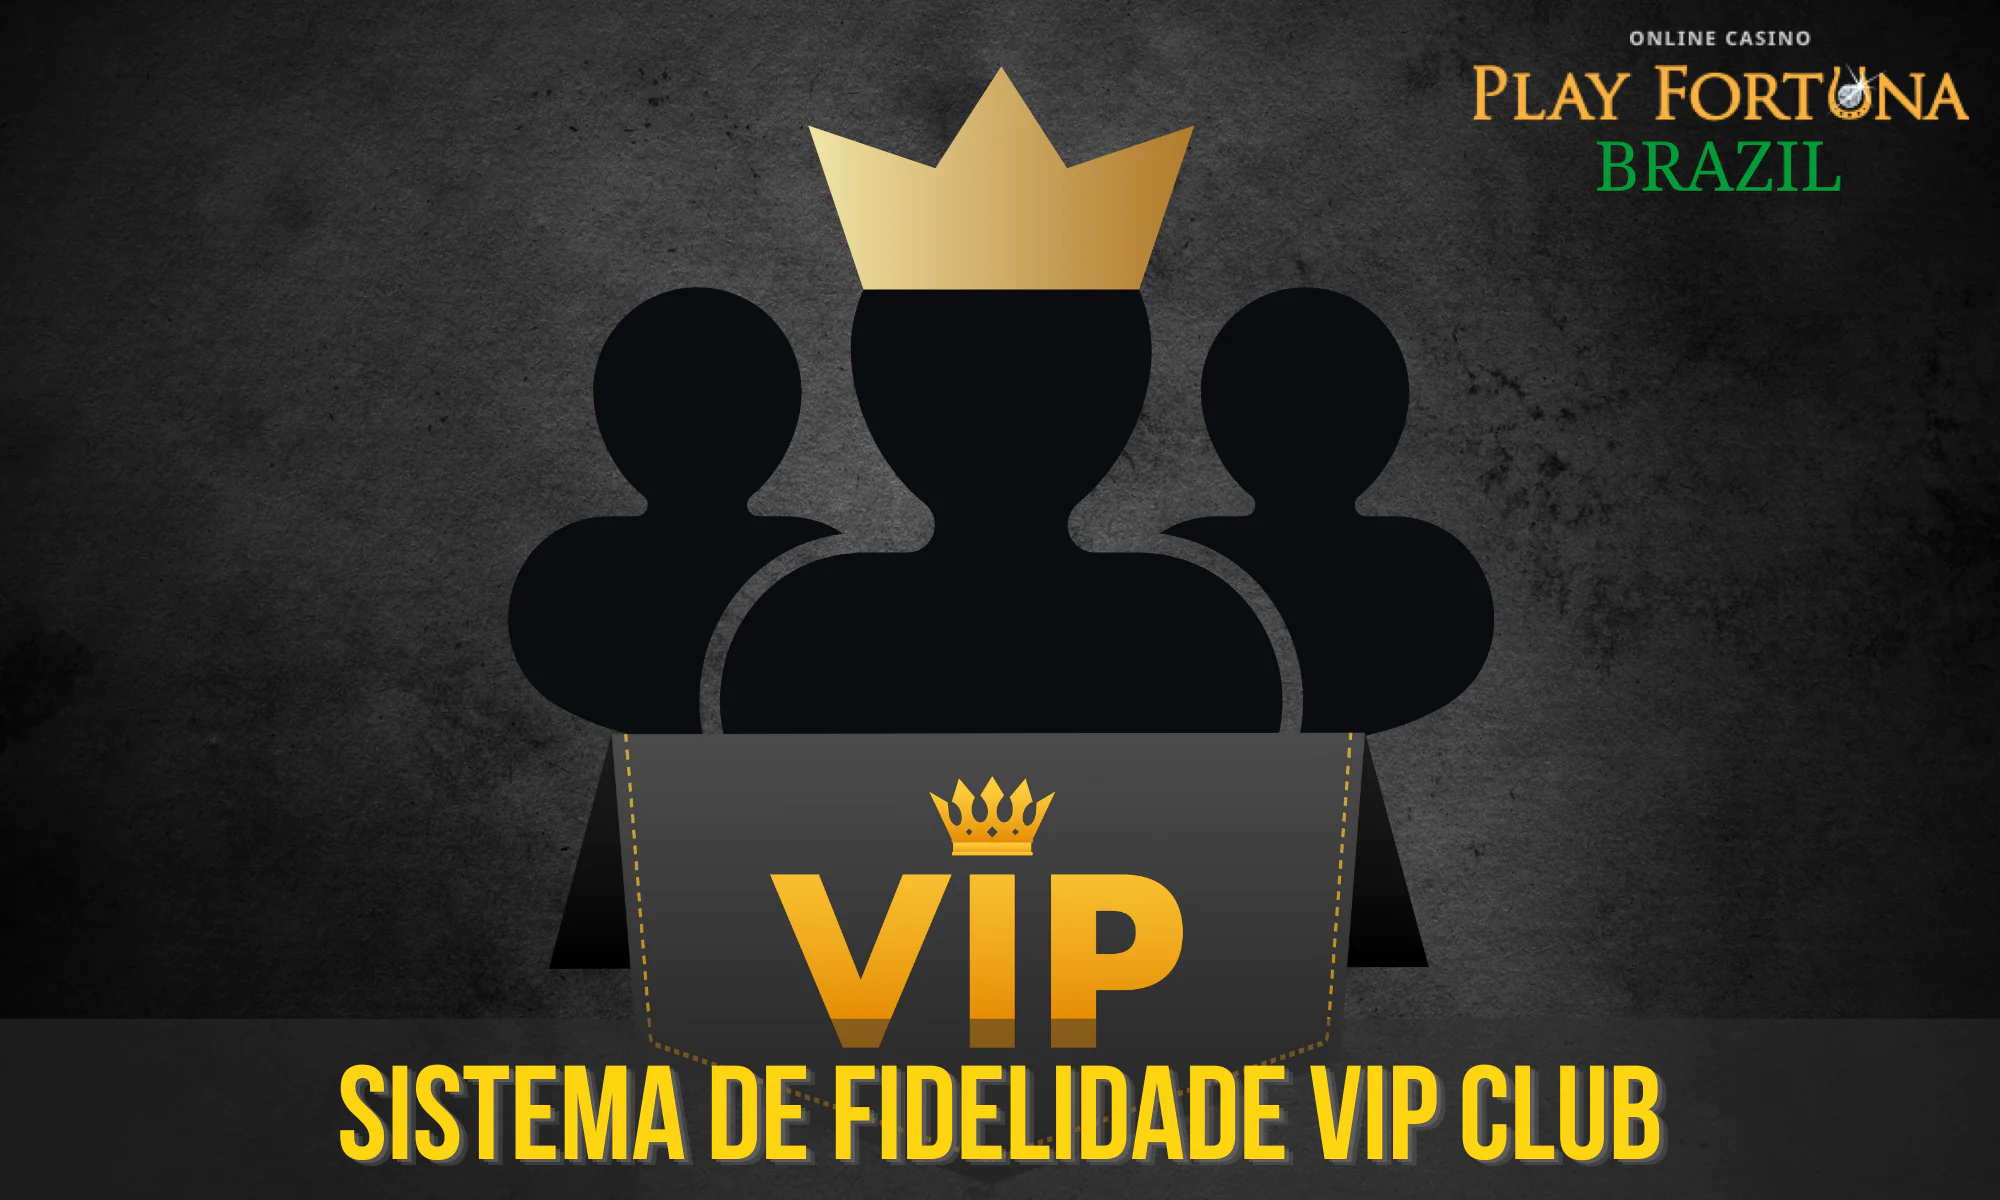 O Play Fortuna Casino recompensa os jogadores brasileiros ativos e regulares